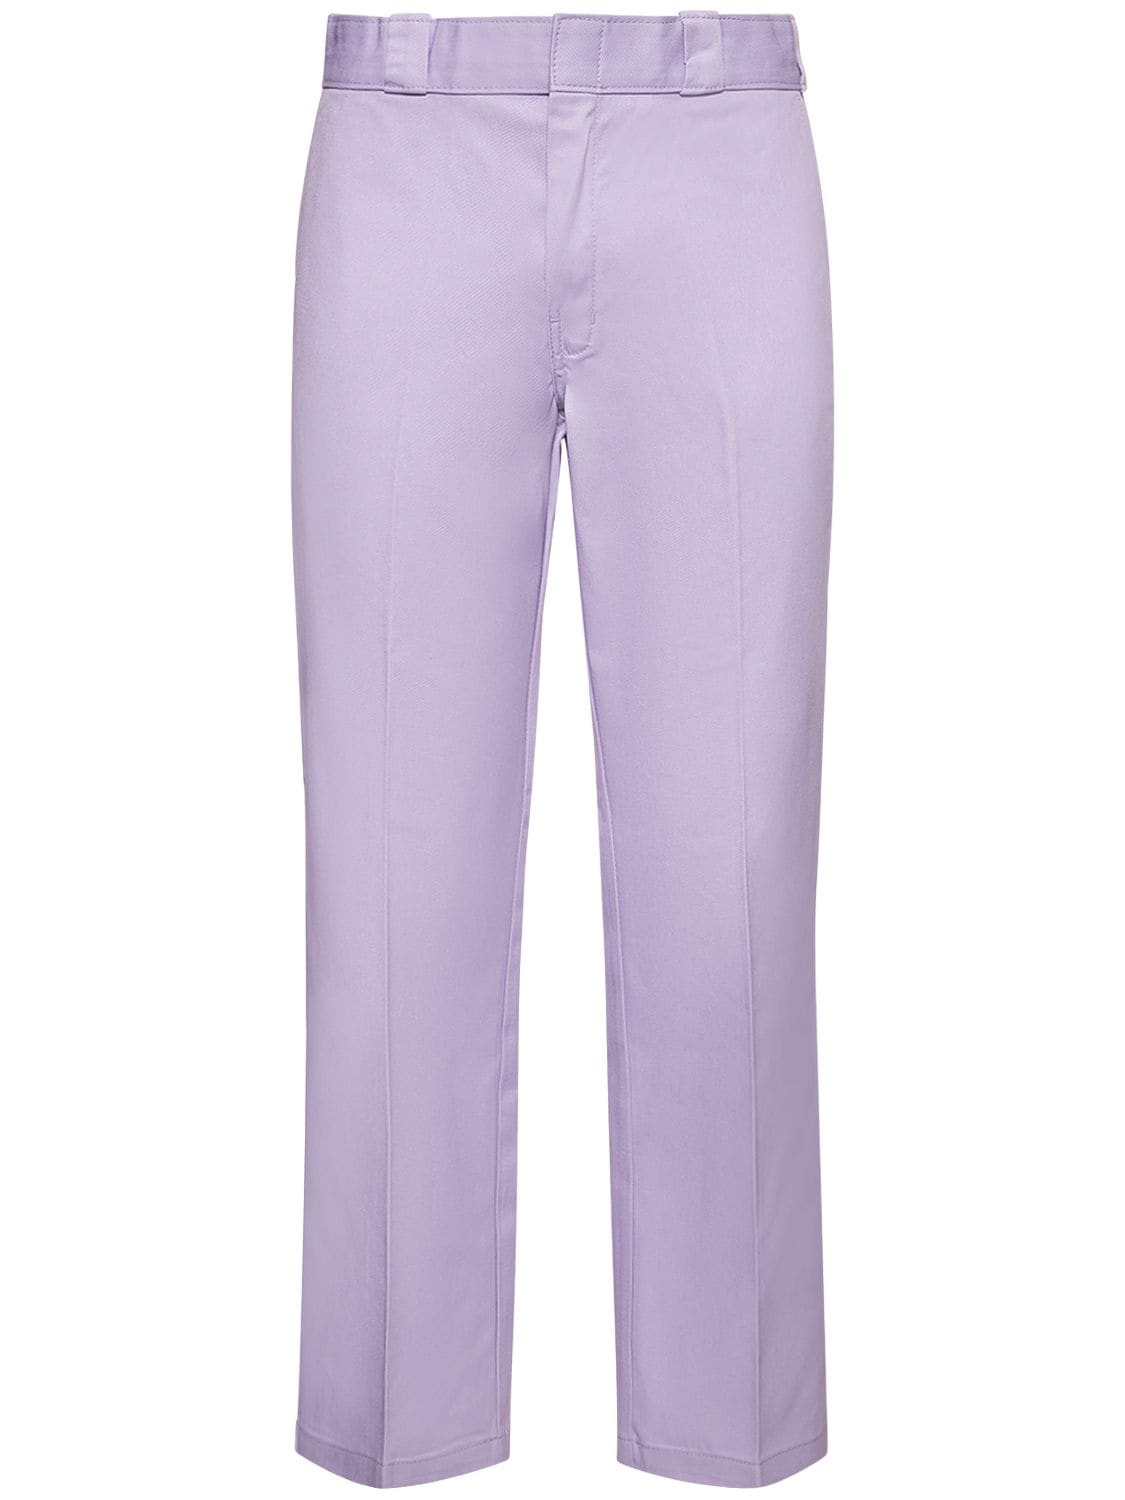 Dickies 874 Work Pants In Purple Rose